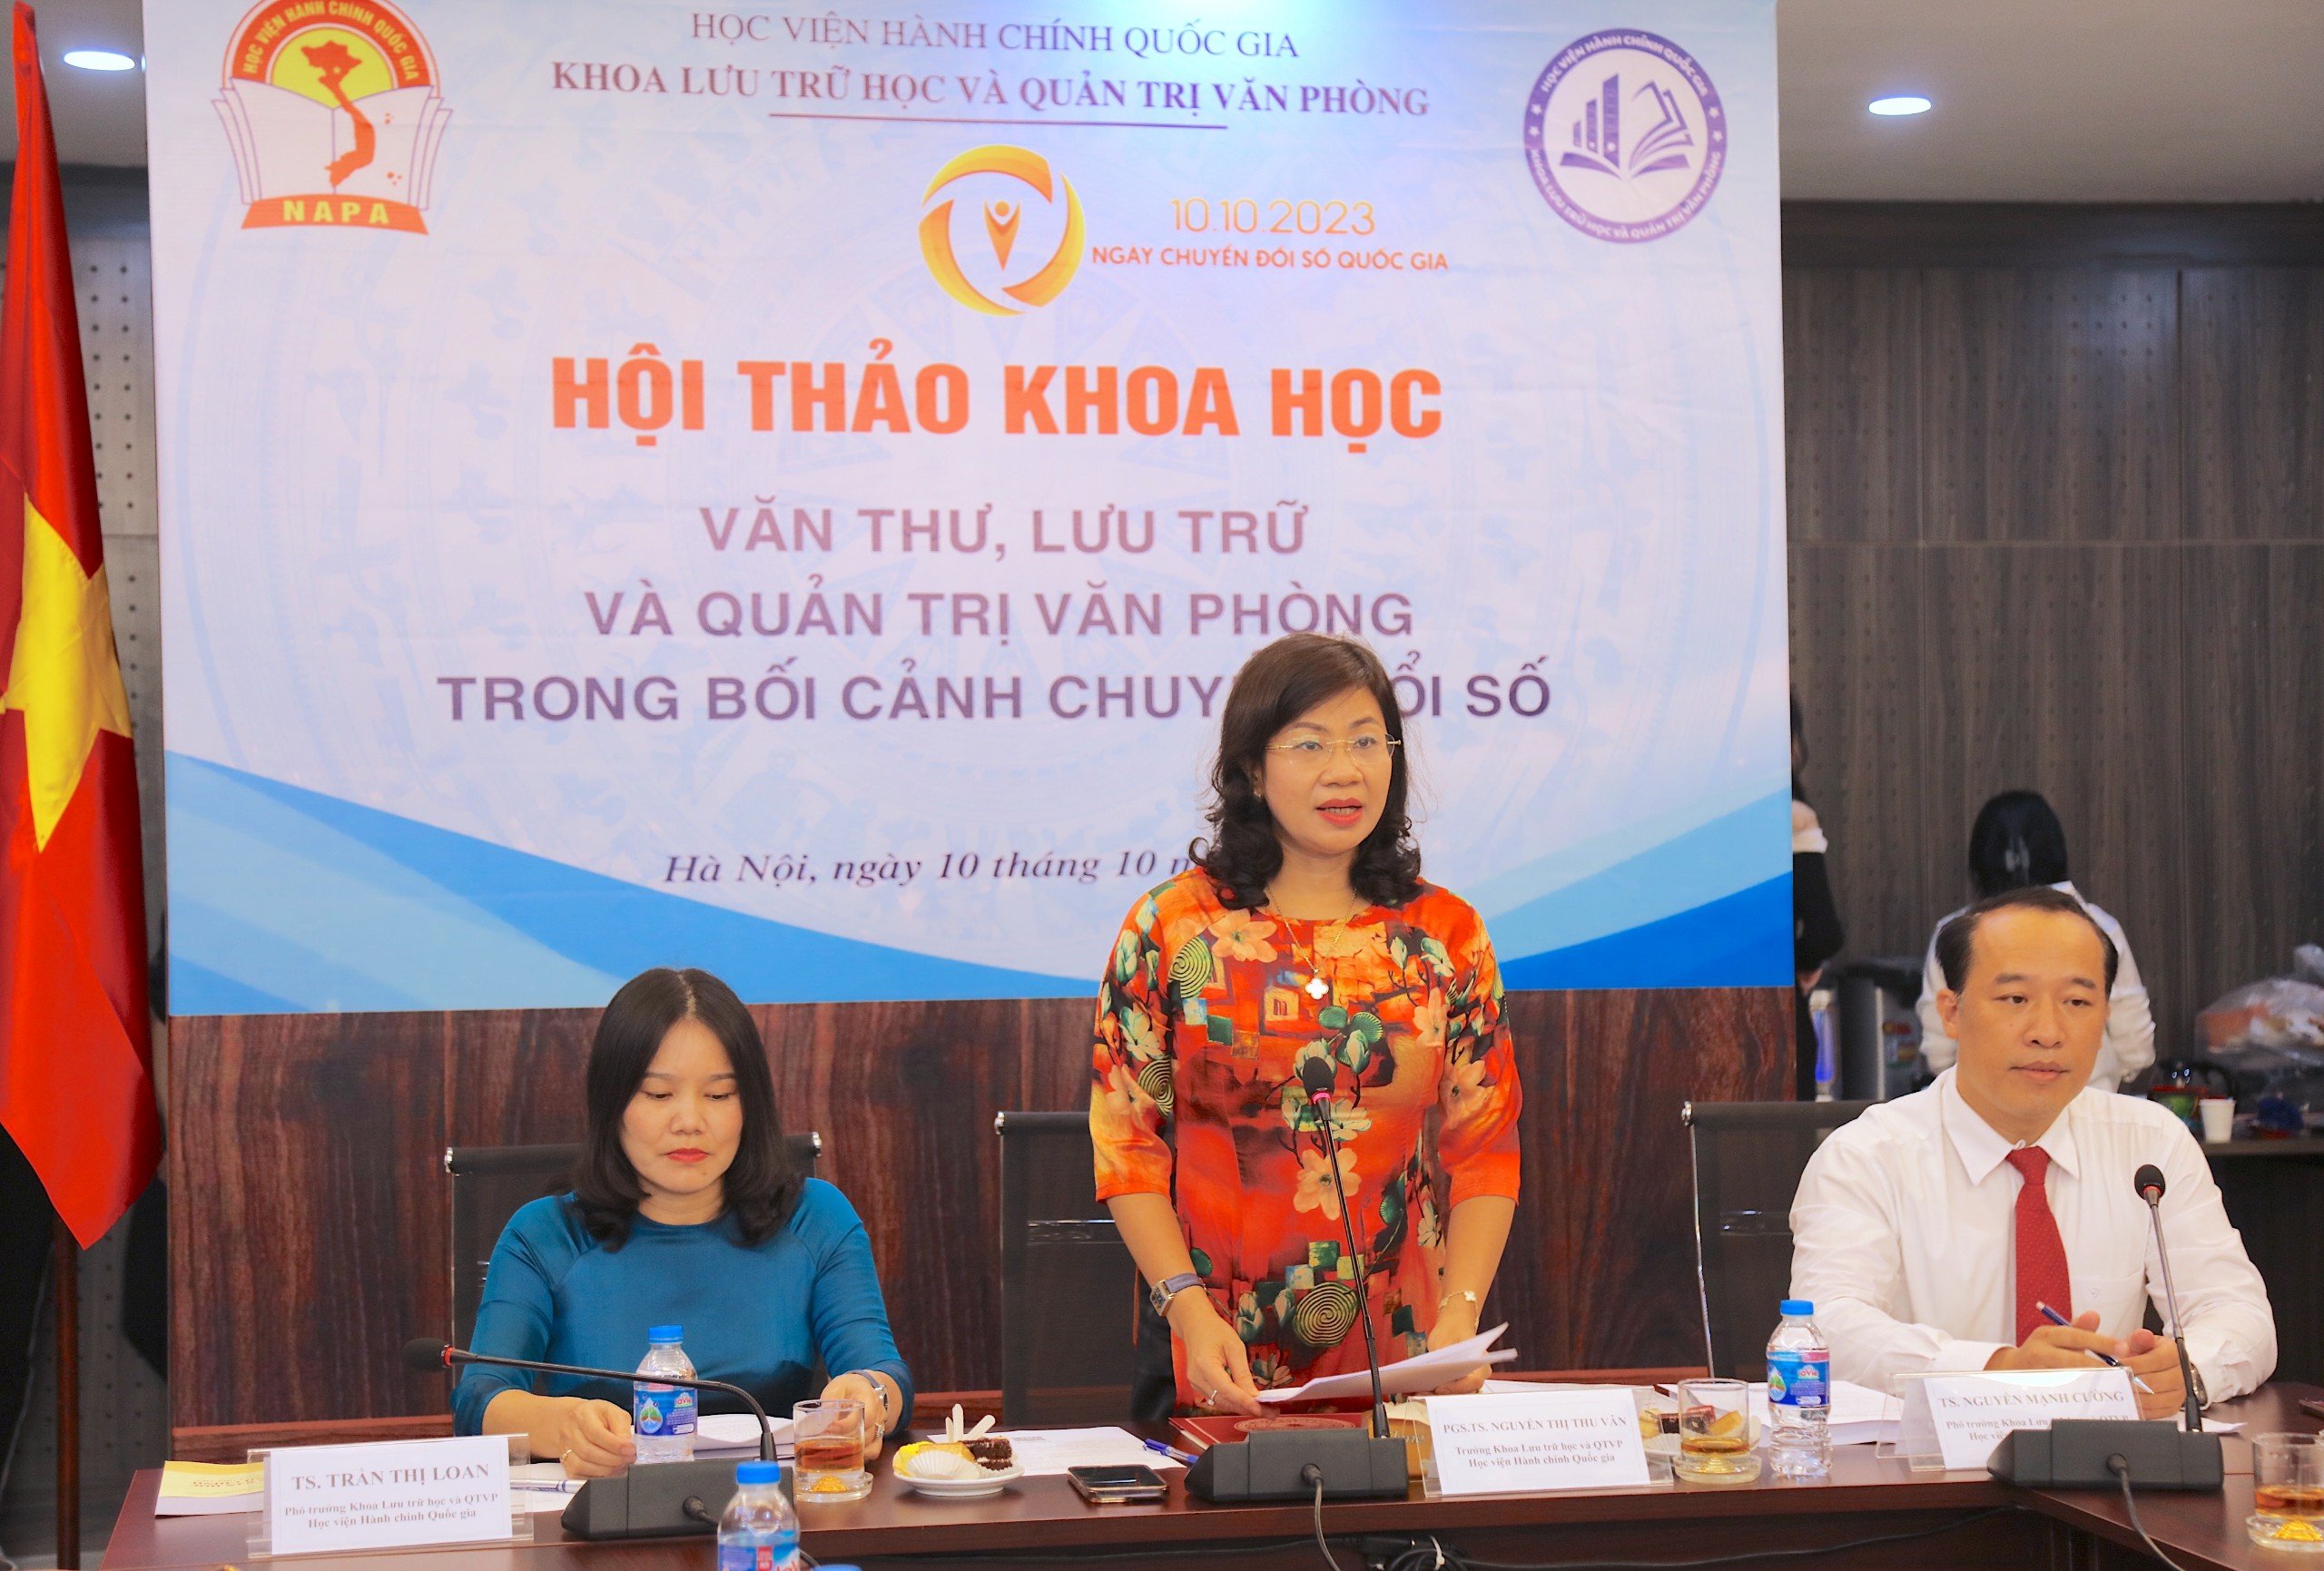 PGS.TS. Nguyễn Thị Thu Vân, Trưởng Khoa Lưu trữ học và Quản trị văn phòng phát biểu khai mạc Hội thảo.